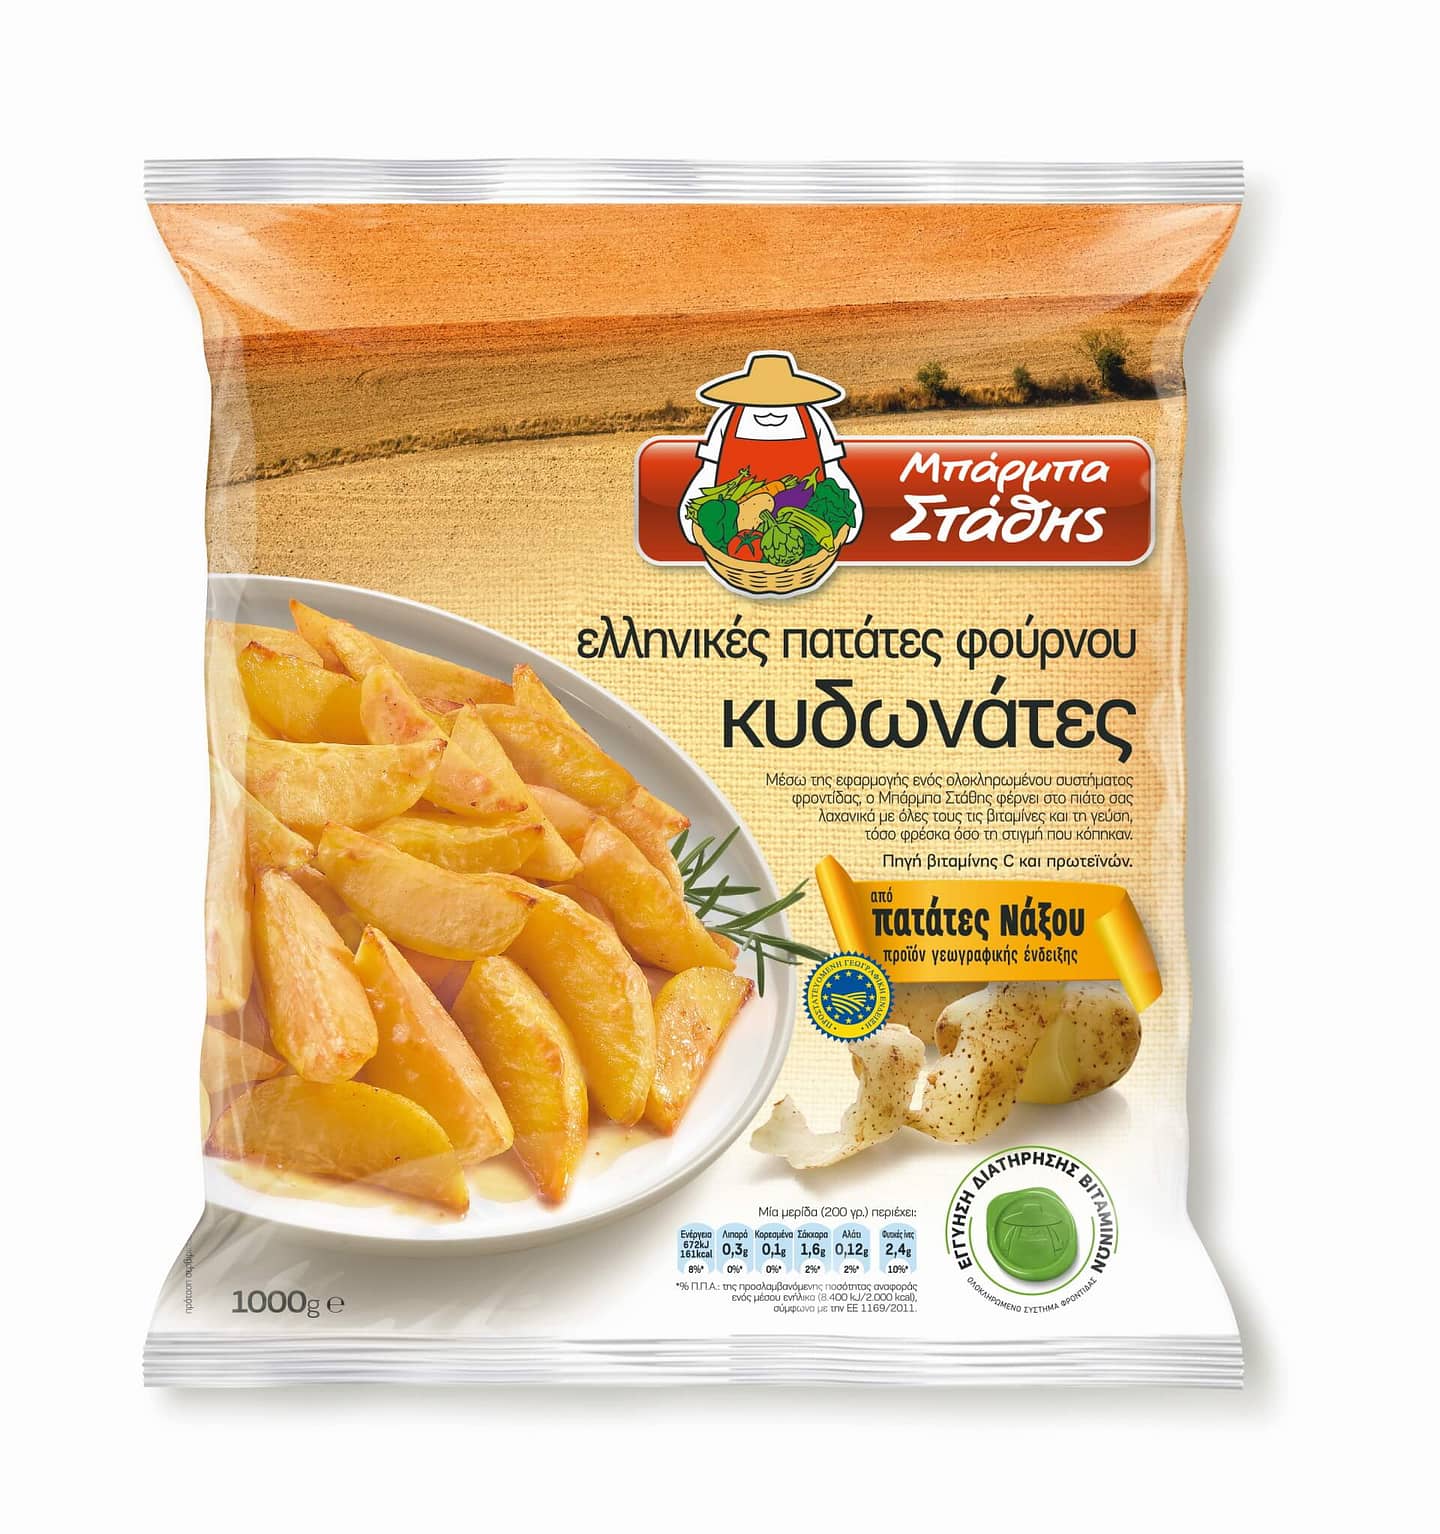 patates fournou kydonates 1000g